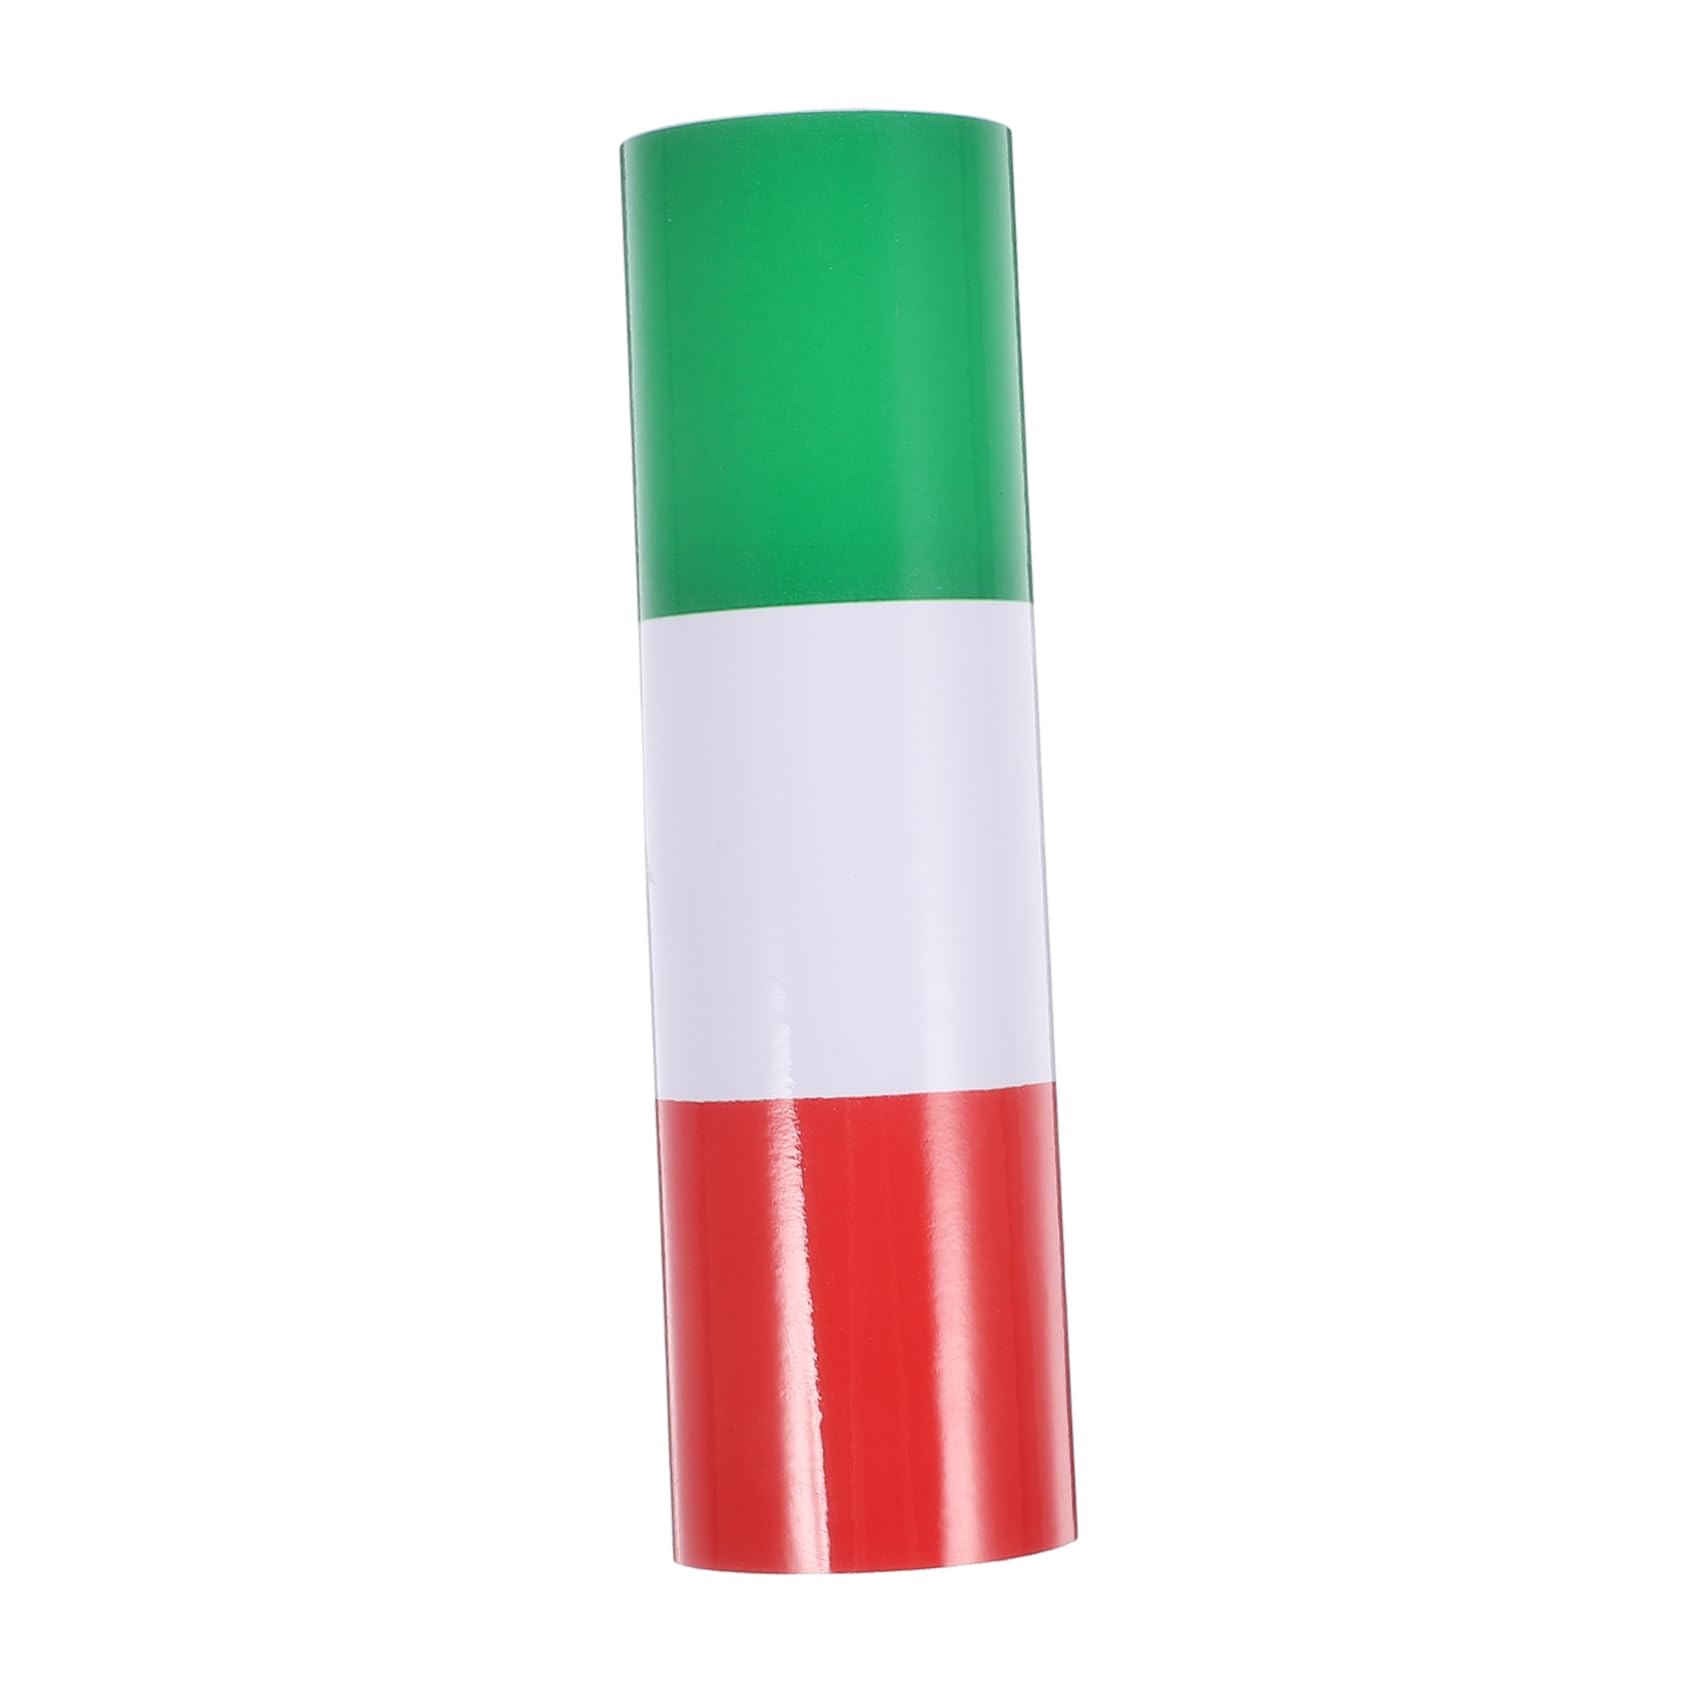 SOESFOUFU 1 Rolle Auto-Taillenaufkleber autotattoos car Decoration Autoaufkleber mit italienischen Flaggen Aufkleber für die Dekoration für Fahrzeug Auto-Aufkleber Universal- Applikationen von SOESFOUFU